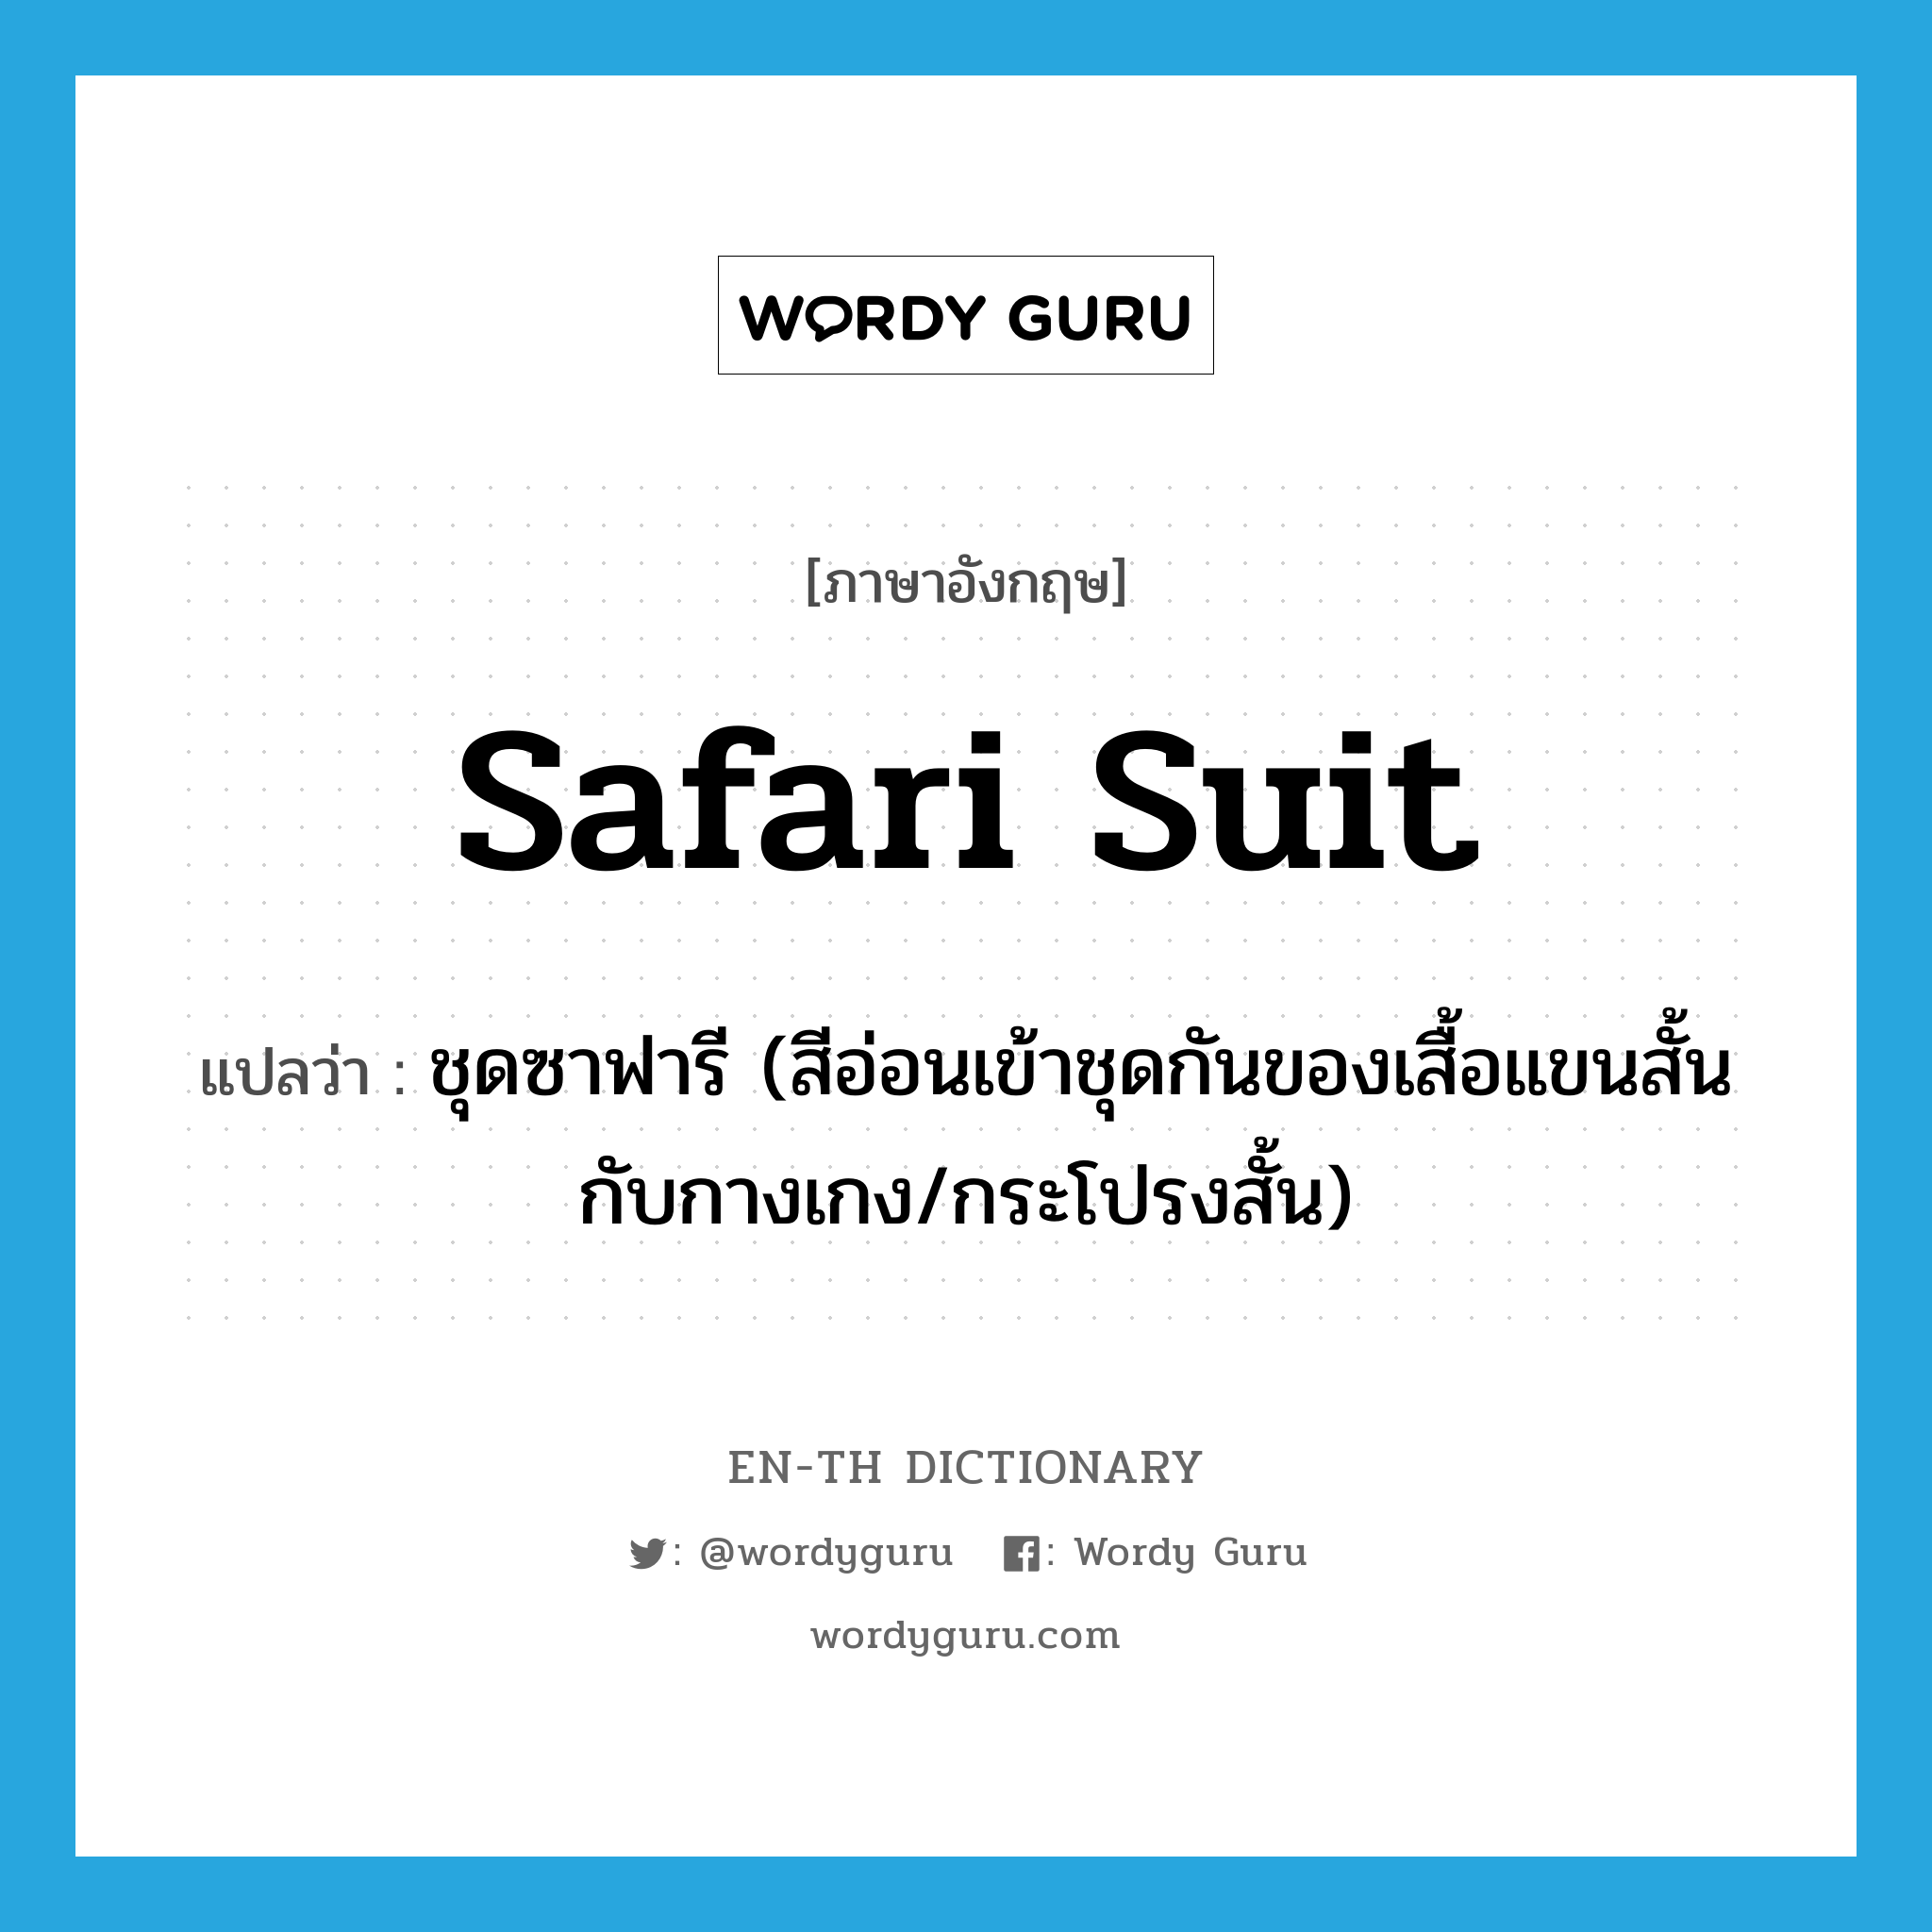 safari suit แปลว่า?, คำศัพท์ภาษาอังกฤษ safari suit แปลว่า ชุดซาฟารี (สีอ่อนเข้าชุดกันของเสื้อแขนสั้นกับกางเกง/กระโปรงสั้น) ประเภท N หมวด N